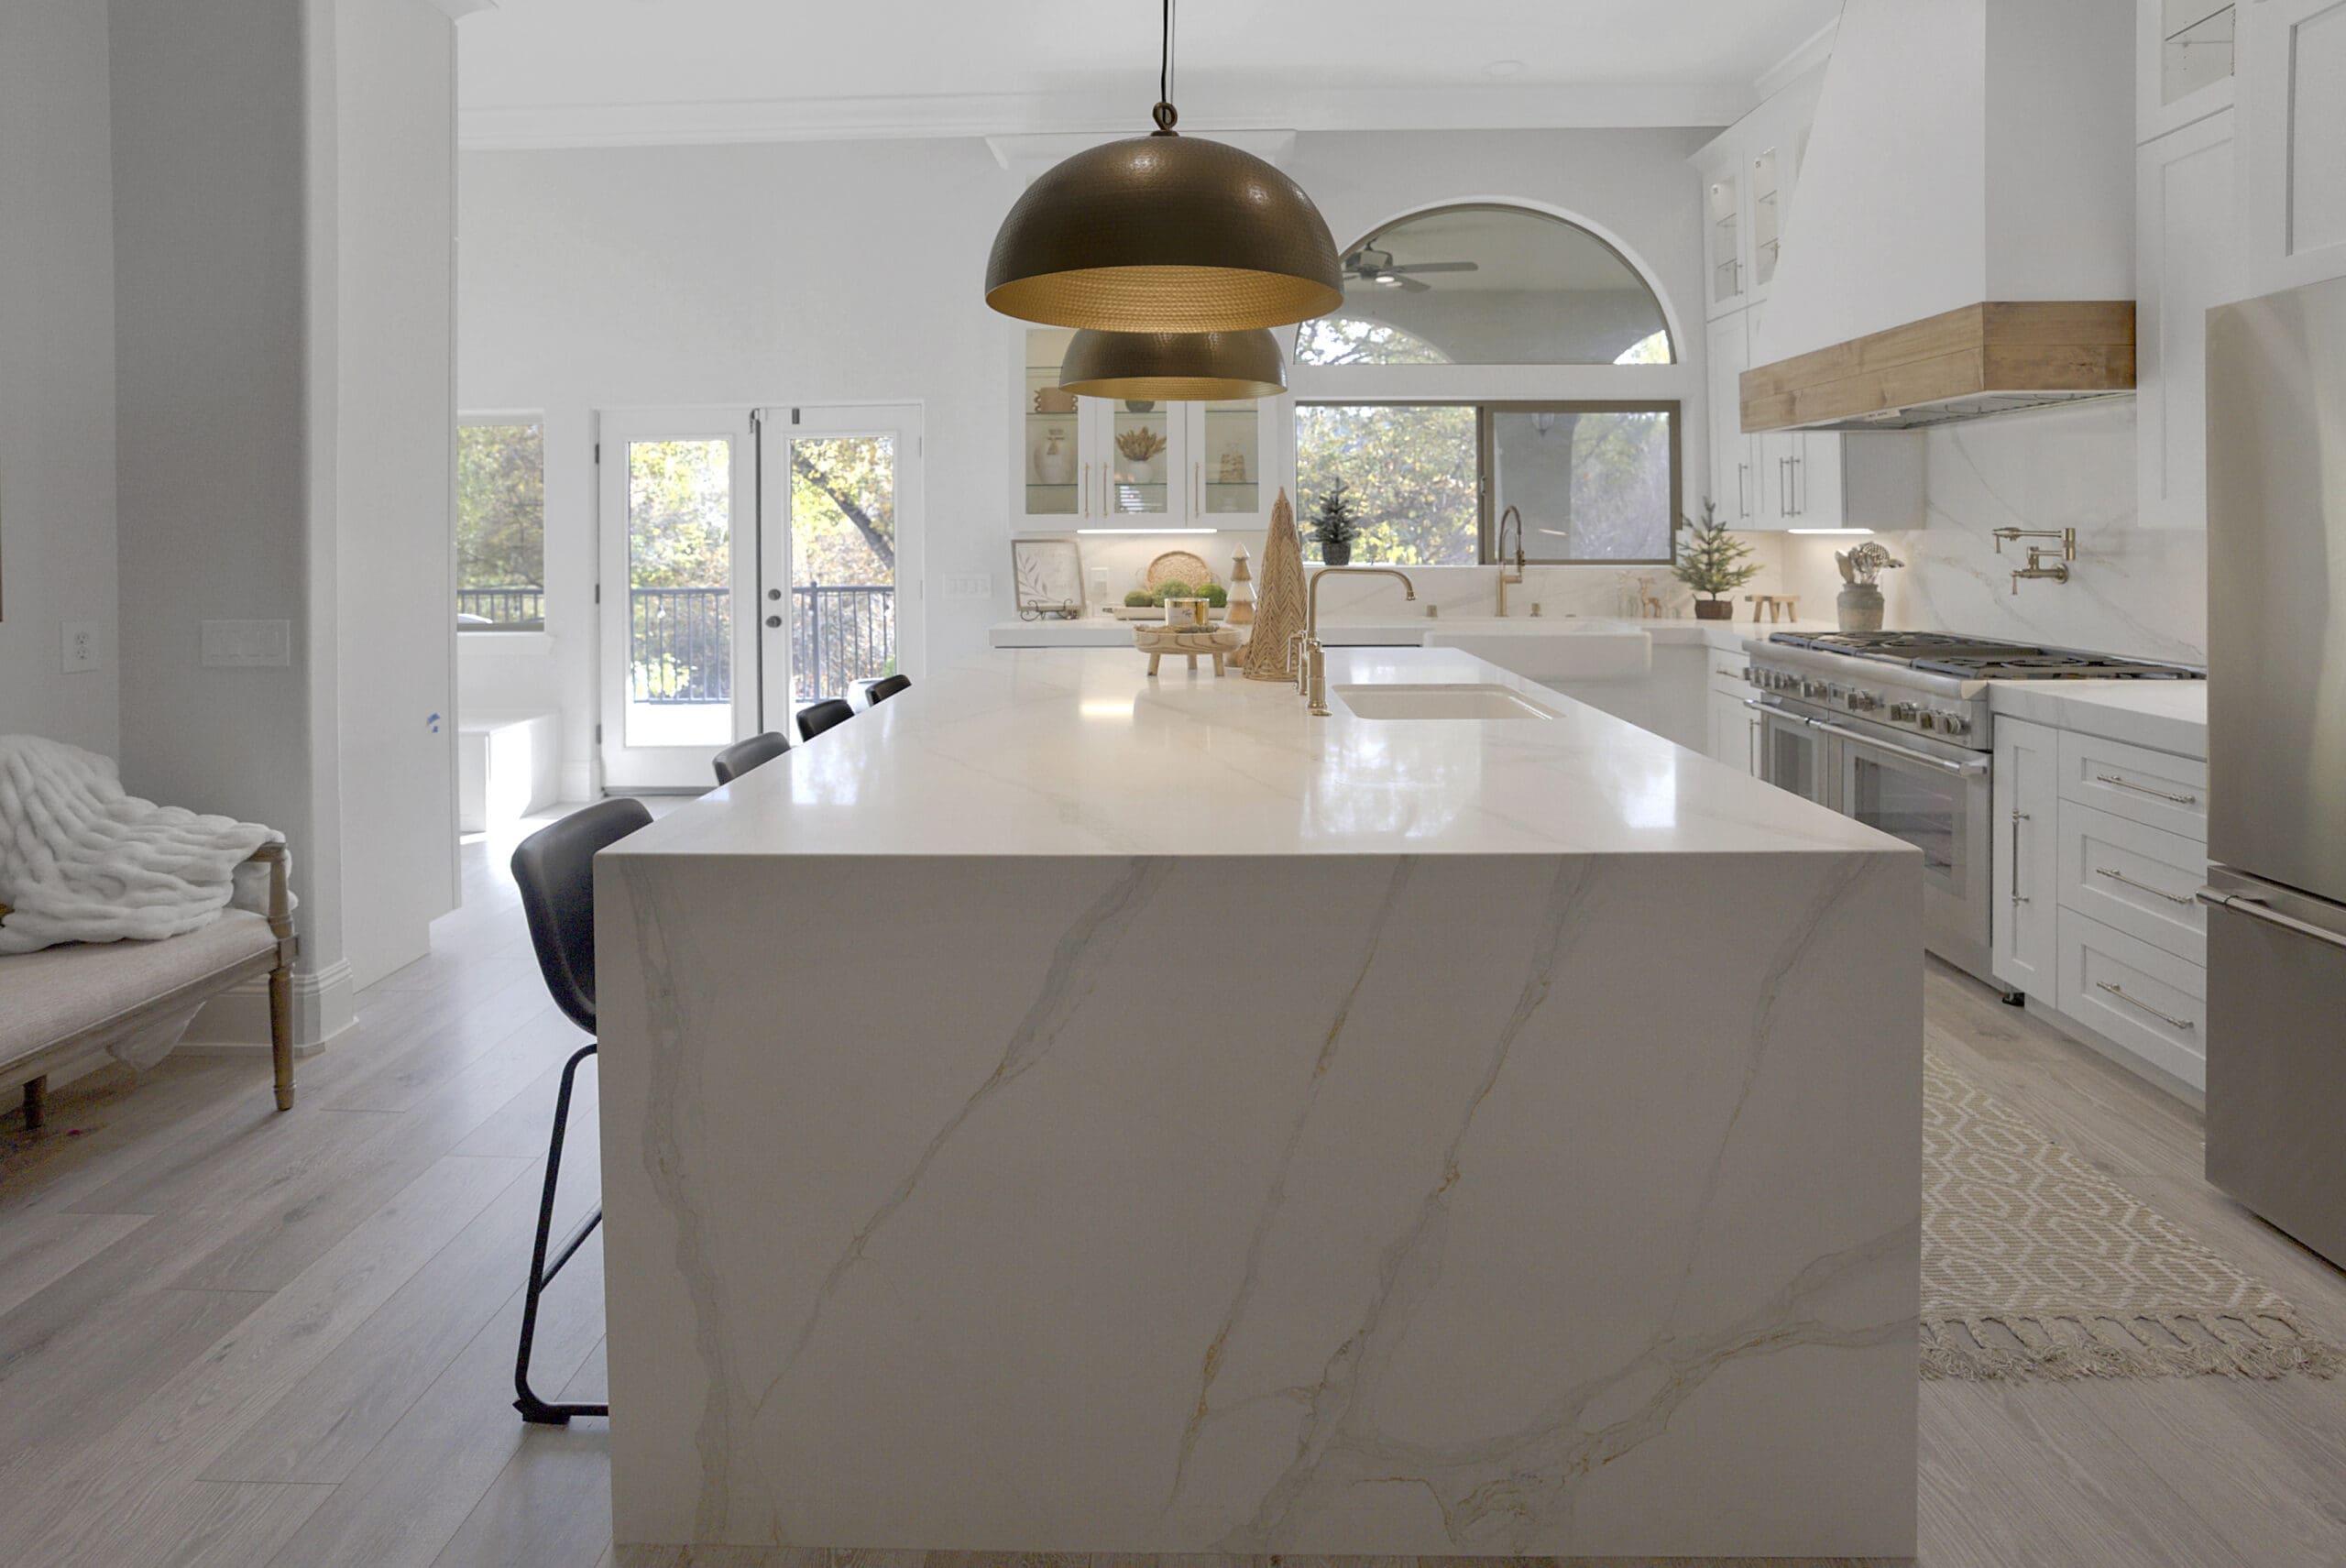 Modern white kitchen countertops